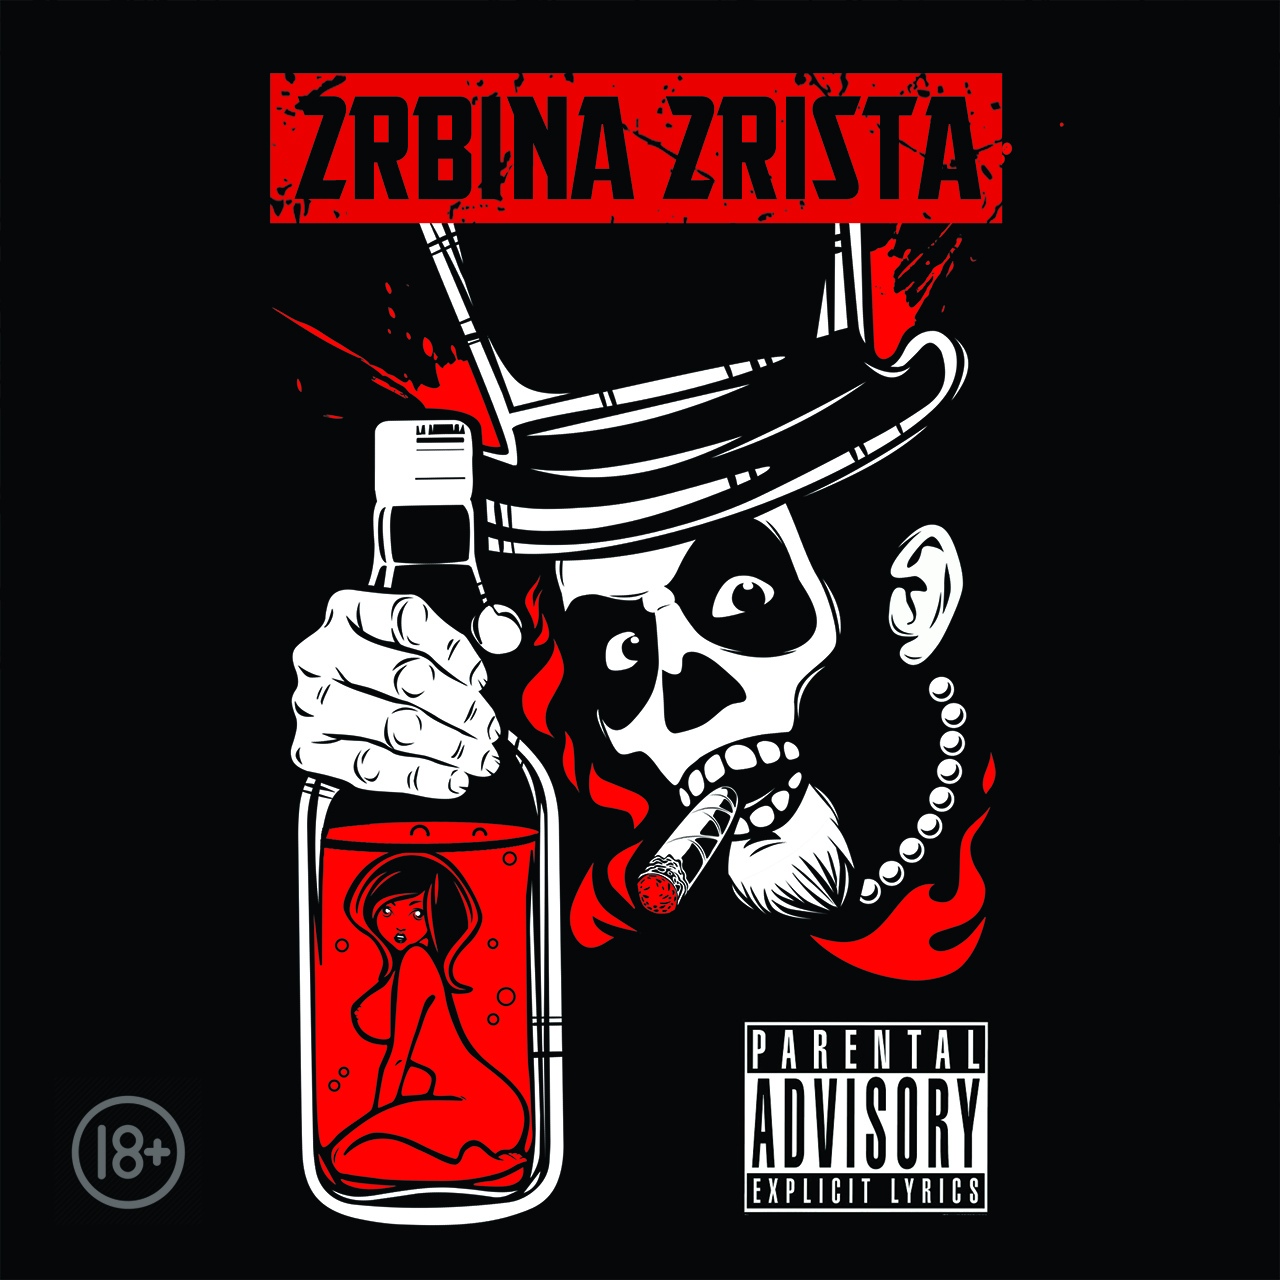 Обложка нового альбома 2rbina2rista.